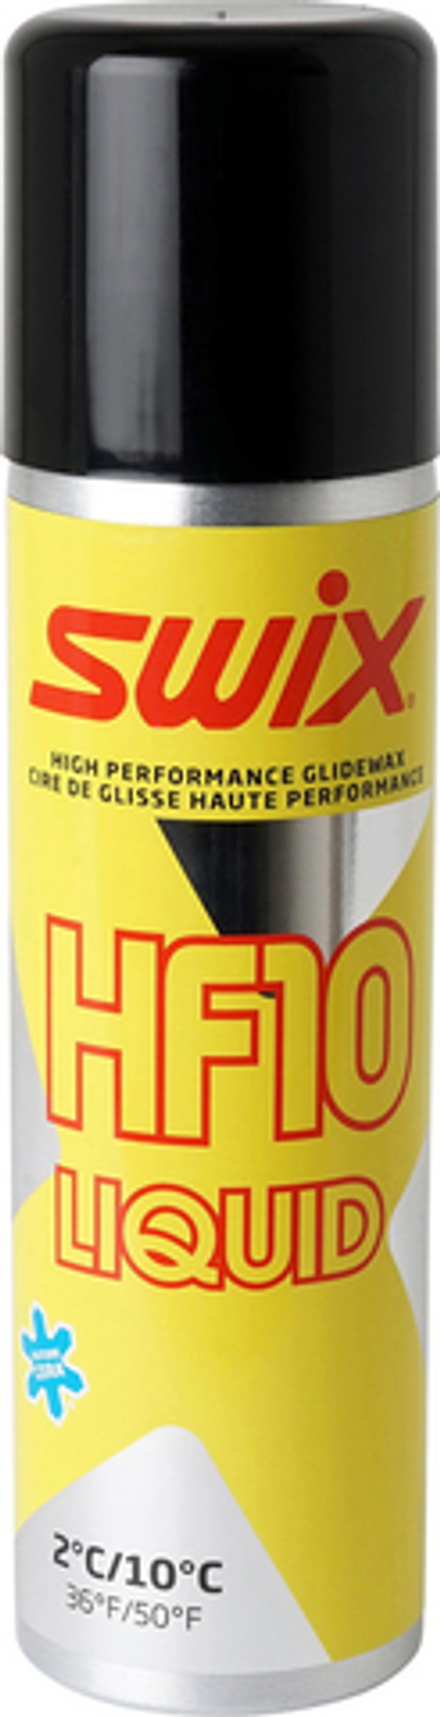 Жидкий парафин SWIX HF10XLiq, (+10+2 С), Yellow, 125 ml